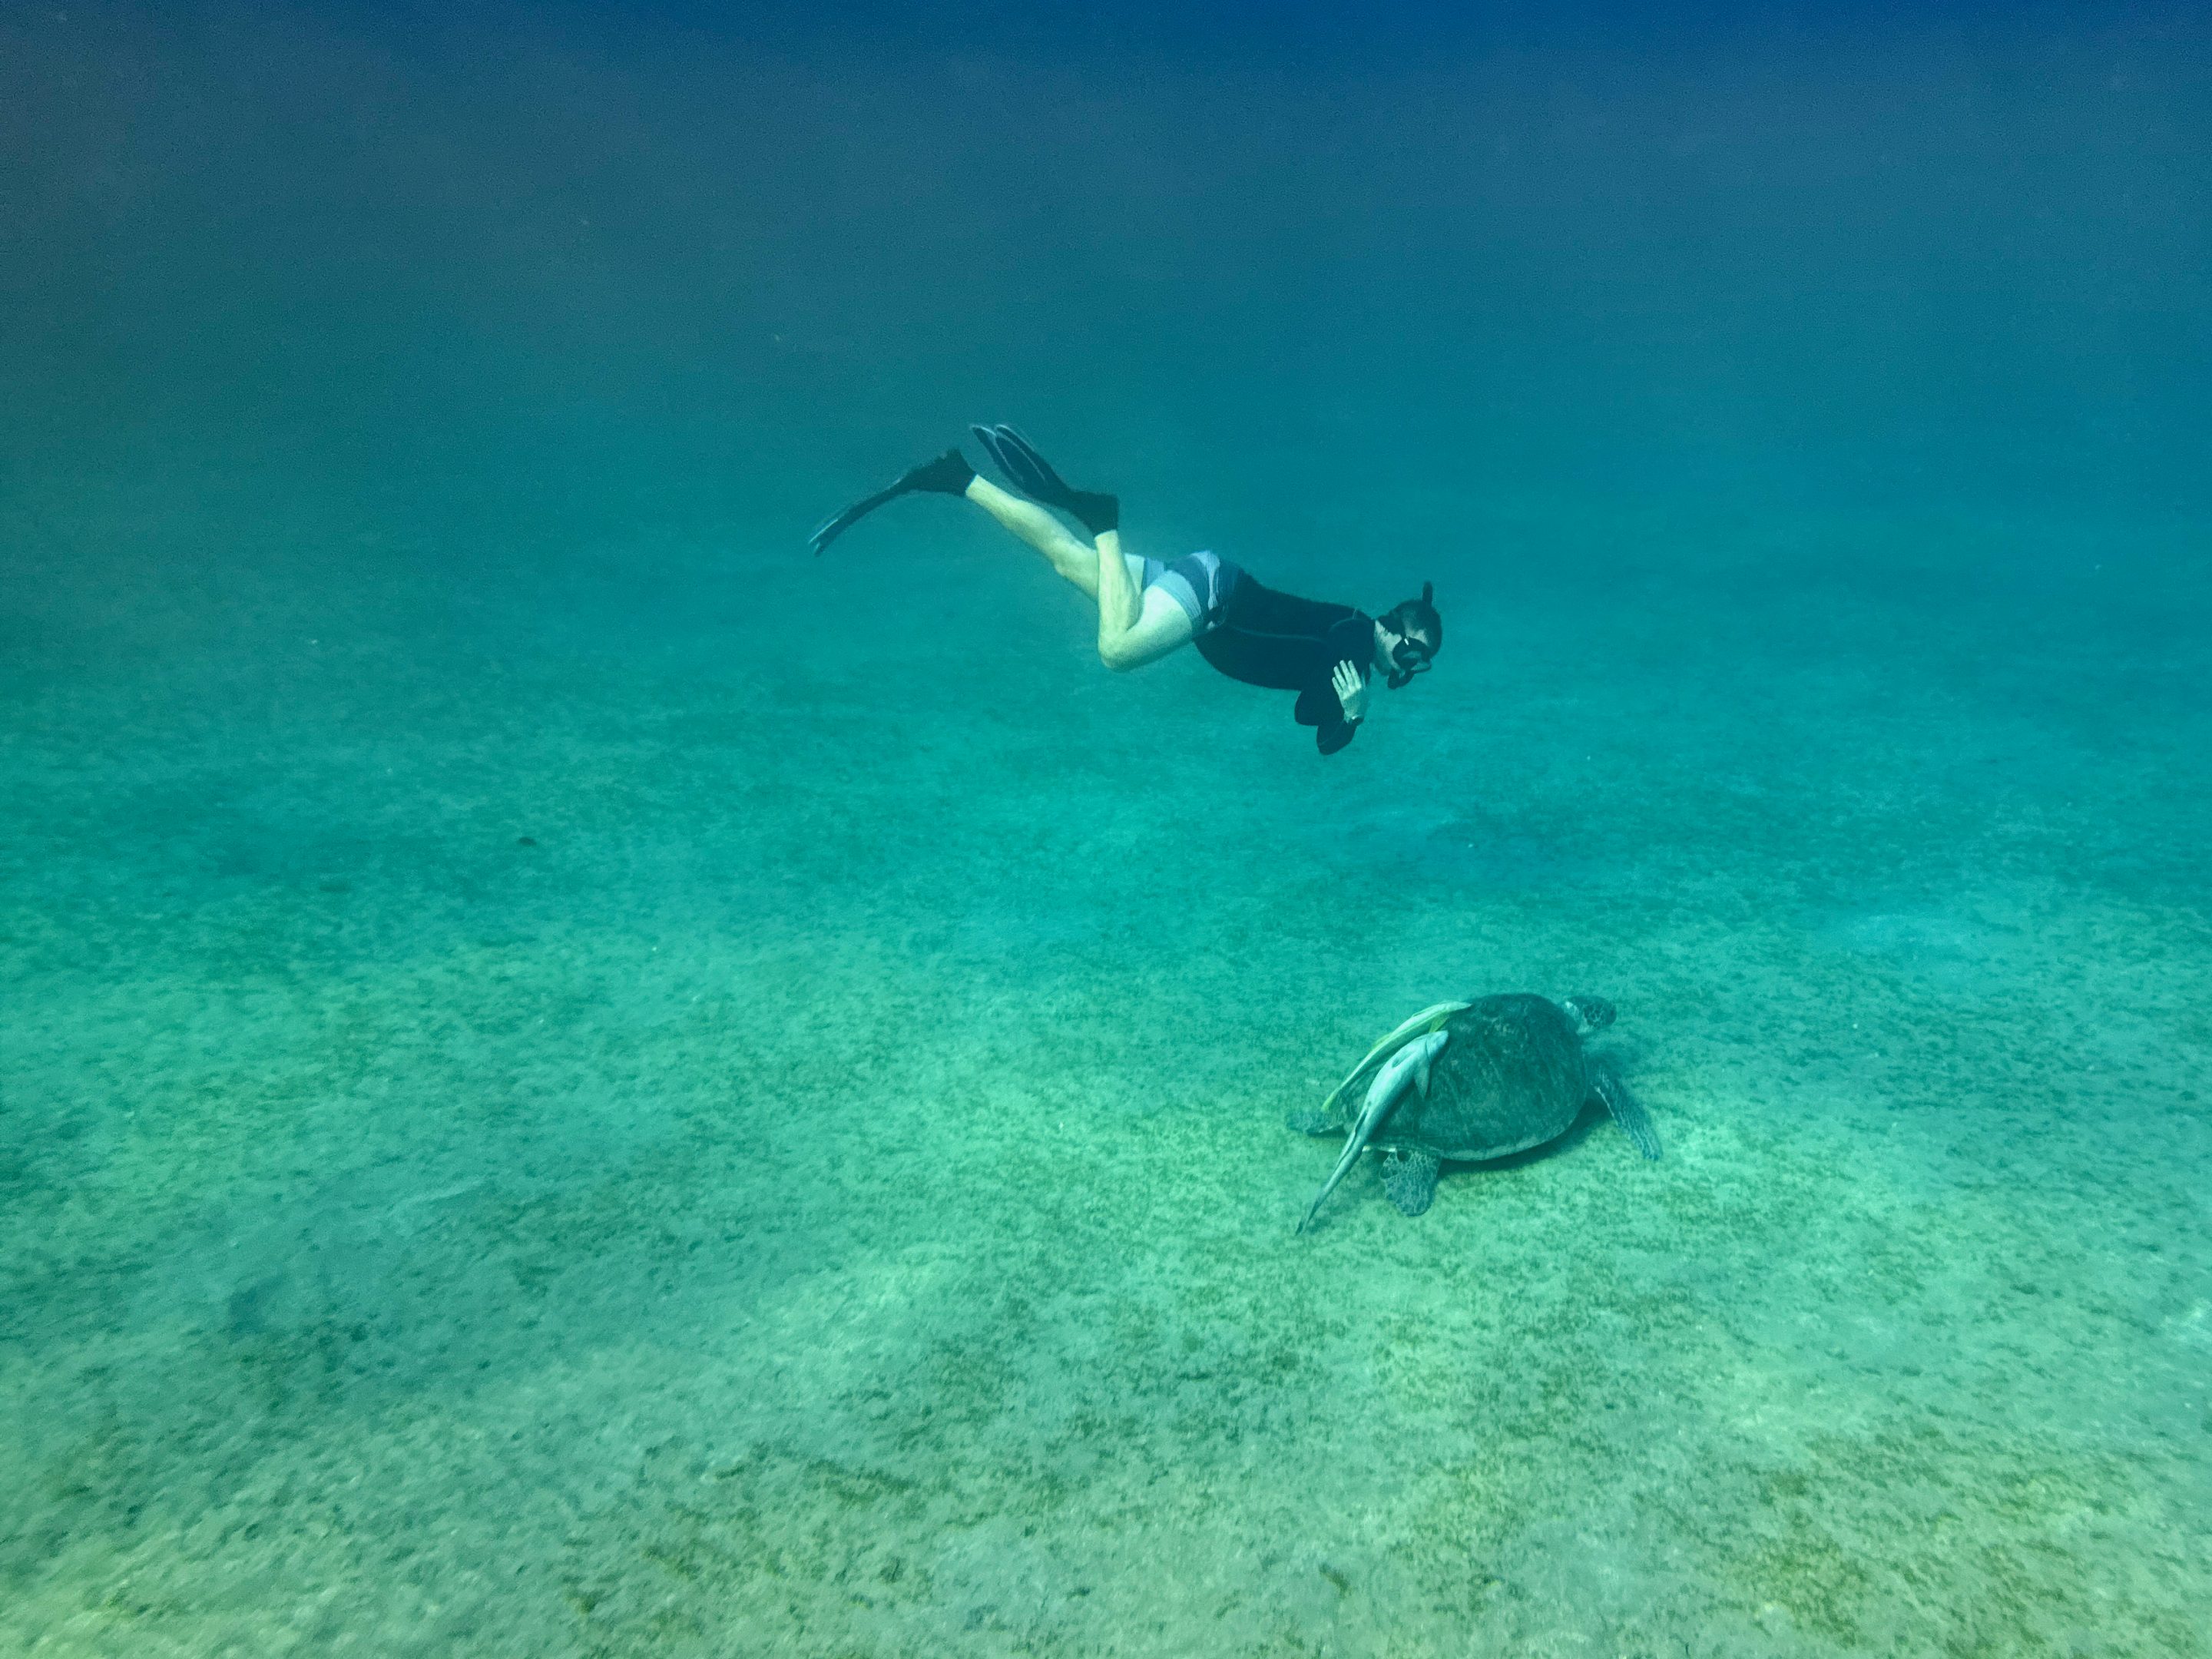 Immer wieder ein Erlebnis – in der Bucht von Abu Dabbab habe ich beim Schnorcheln eine Schildkröte getroffen. Foto: Sascha Tegtmeyer